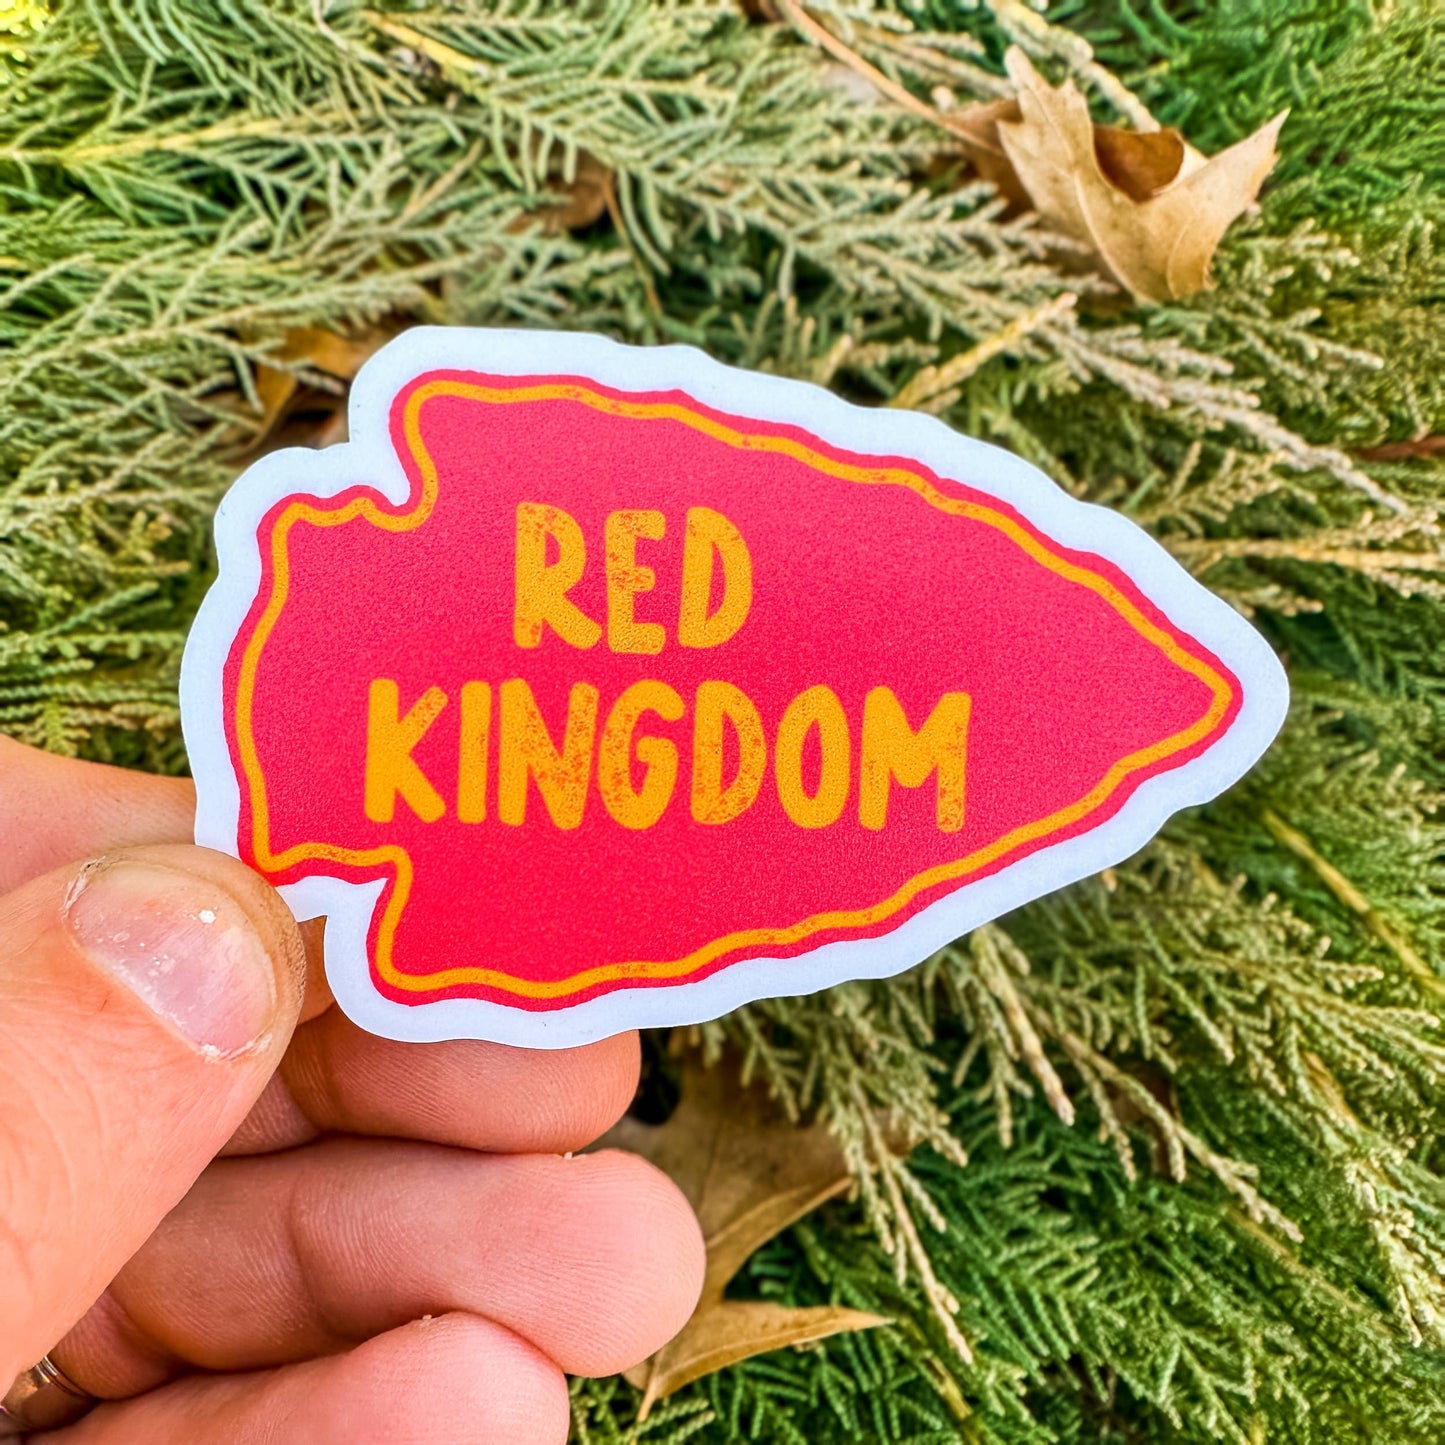 Red Kingdom Arrowhead Waterproof Vinyl Sticker